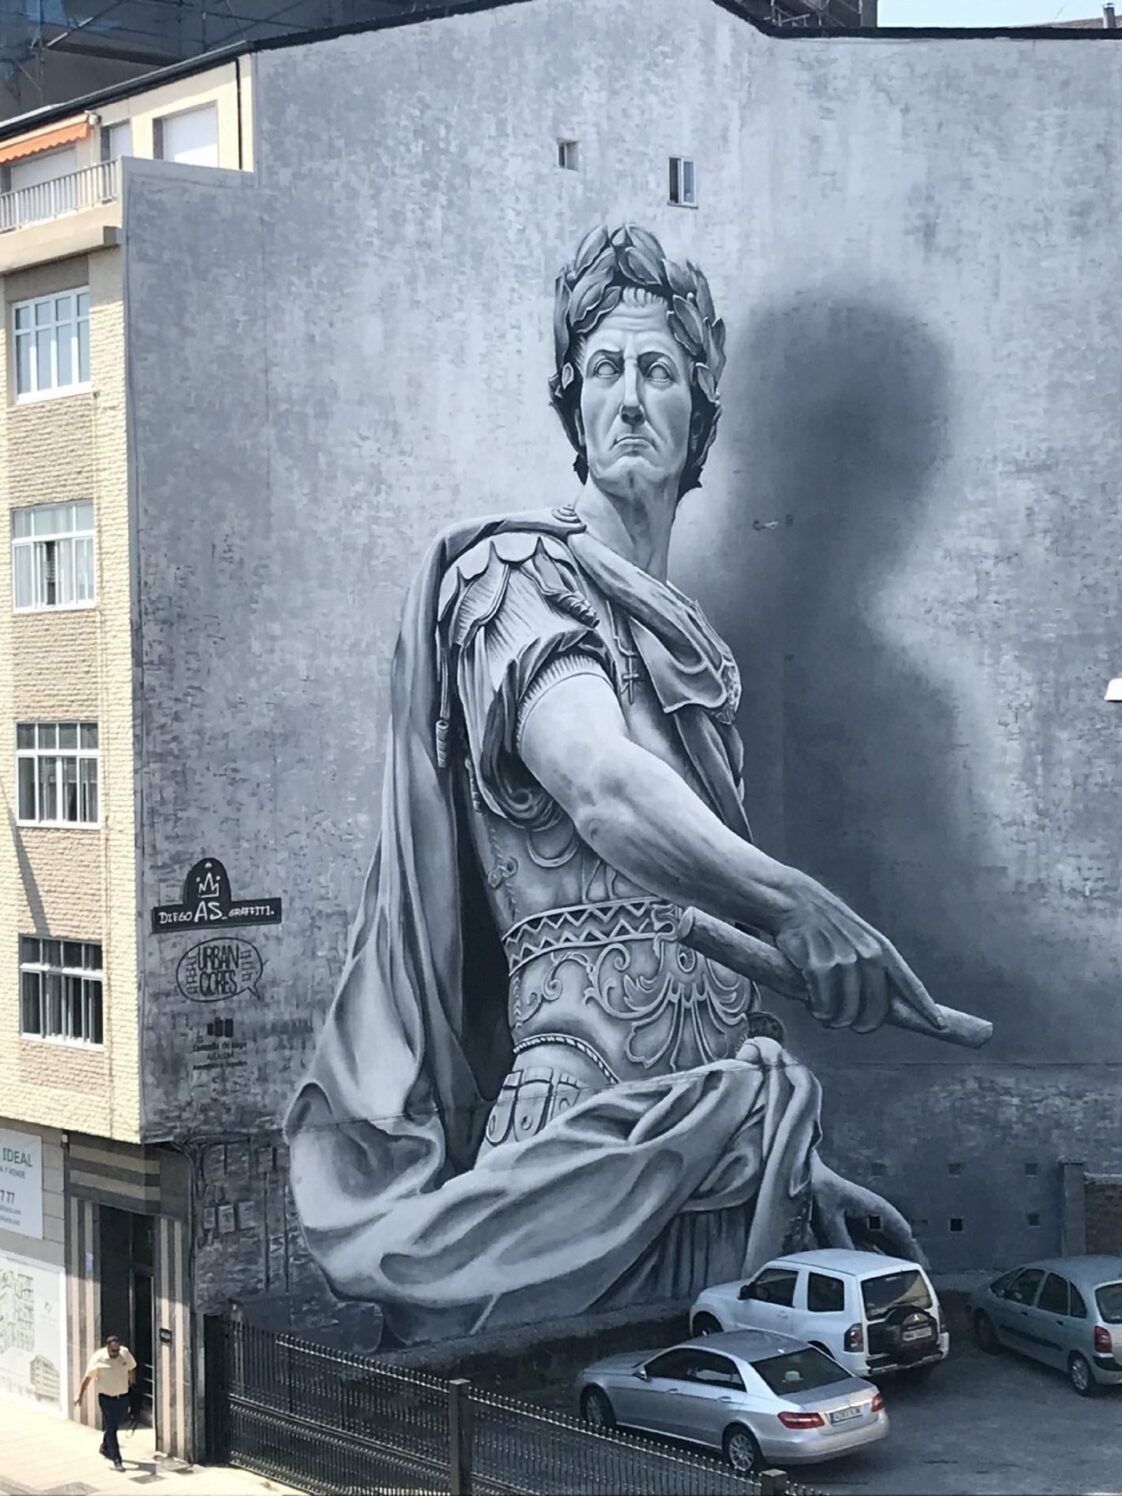 Lugo El Julio César de Diego As escogido el mejor graffiti del mundo en agosto miBrujula com